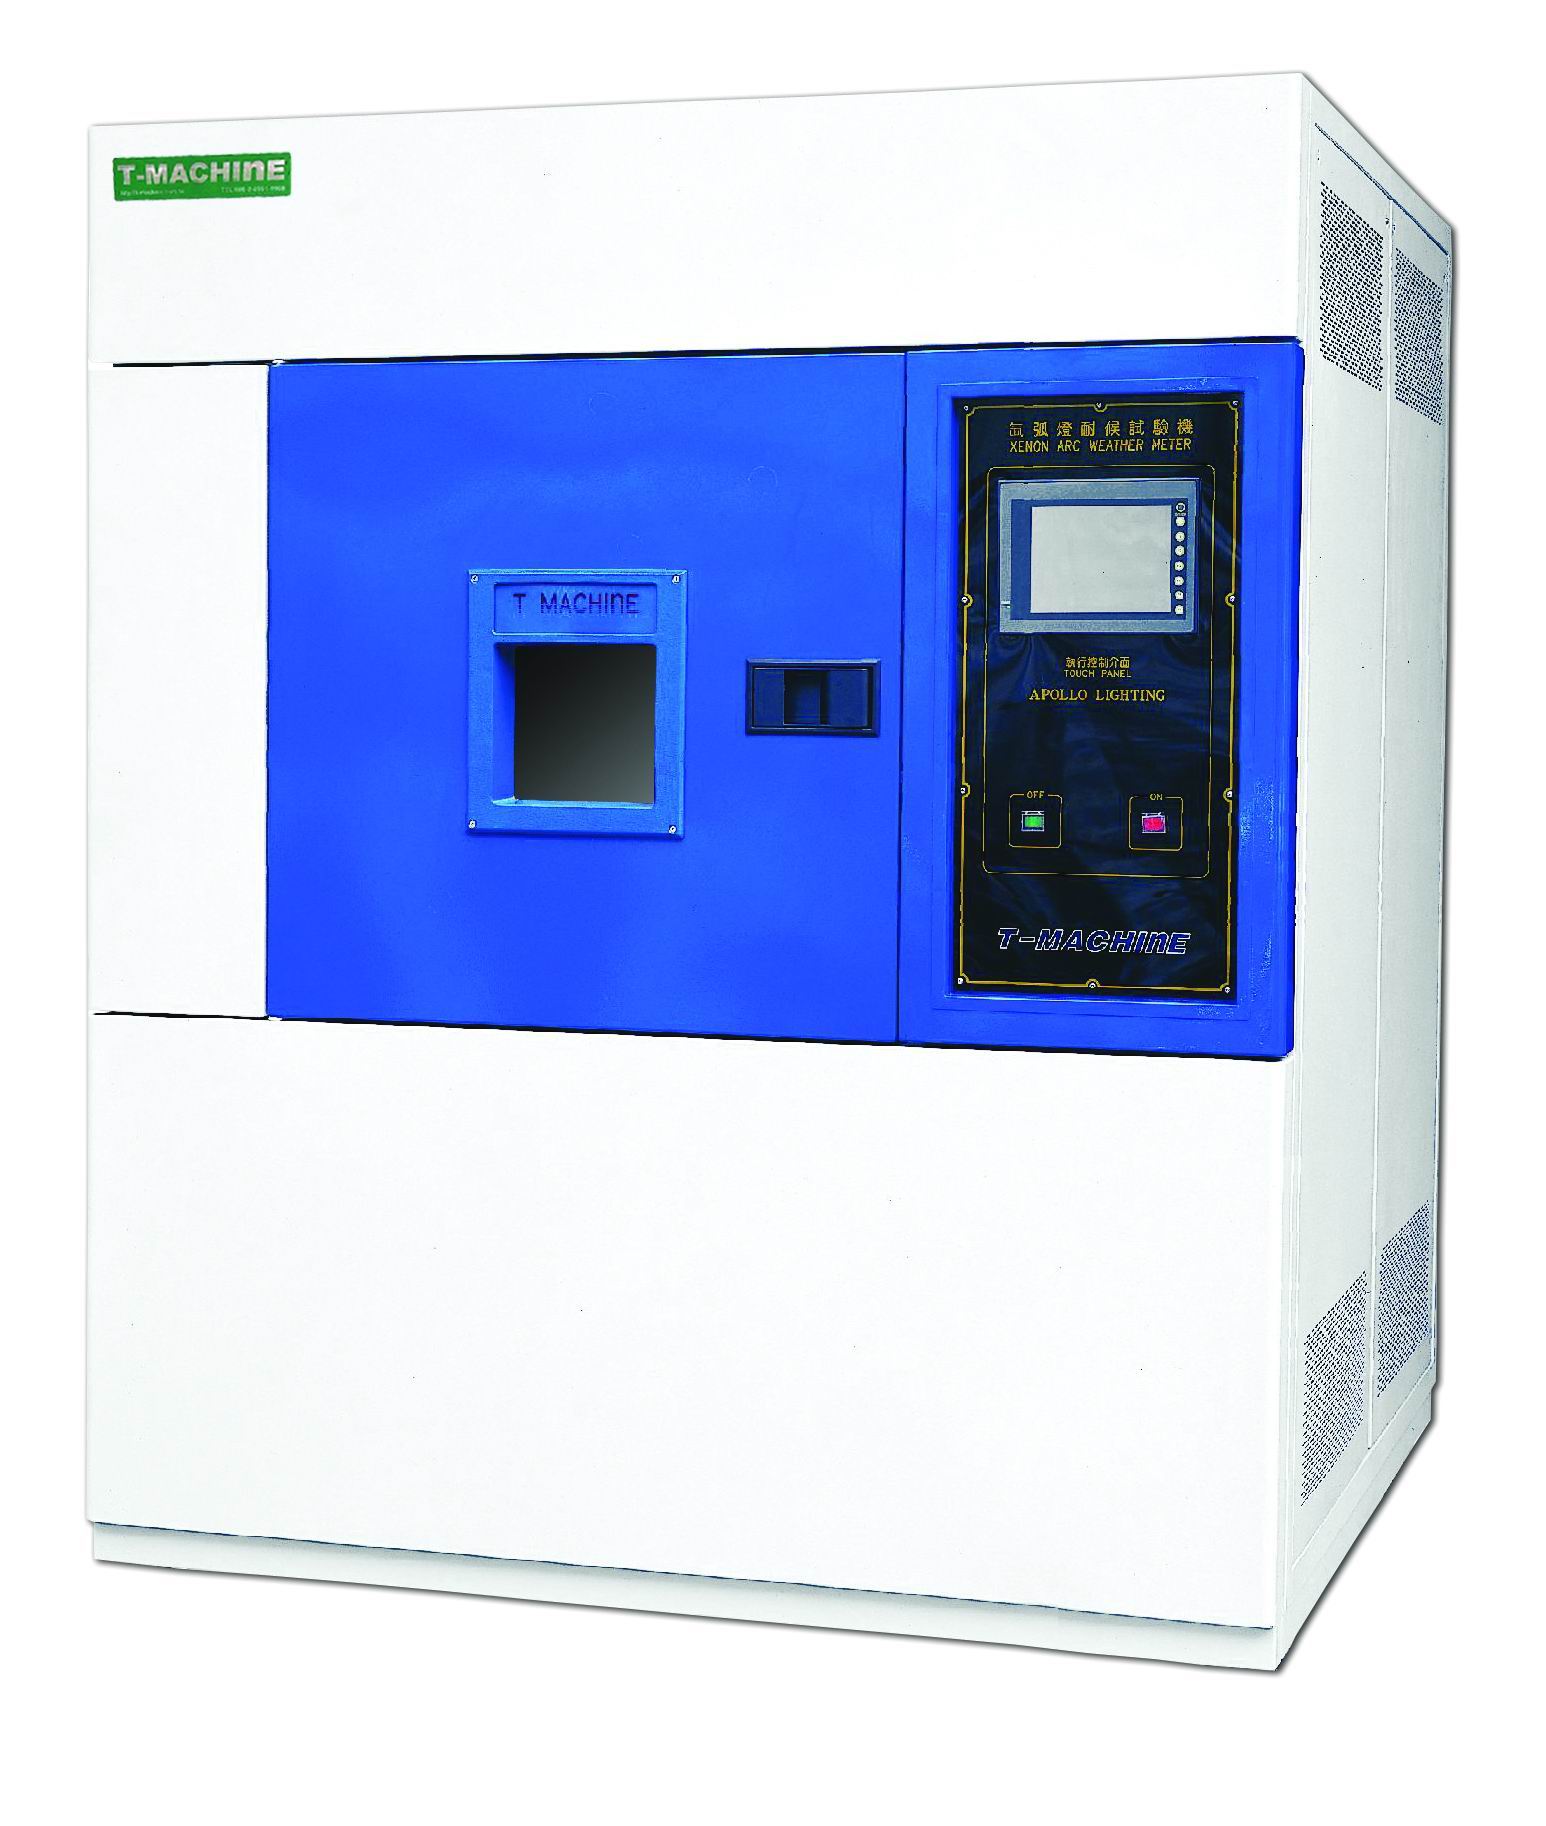 TMJ-9707氙灯耐气候试验箱